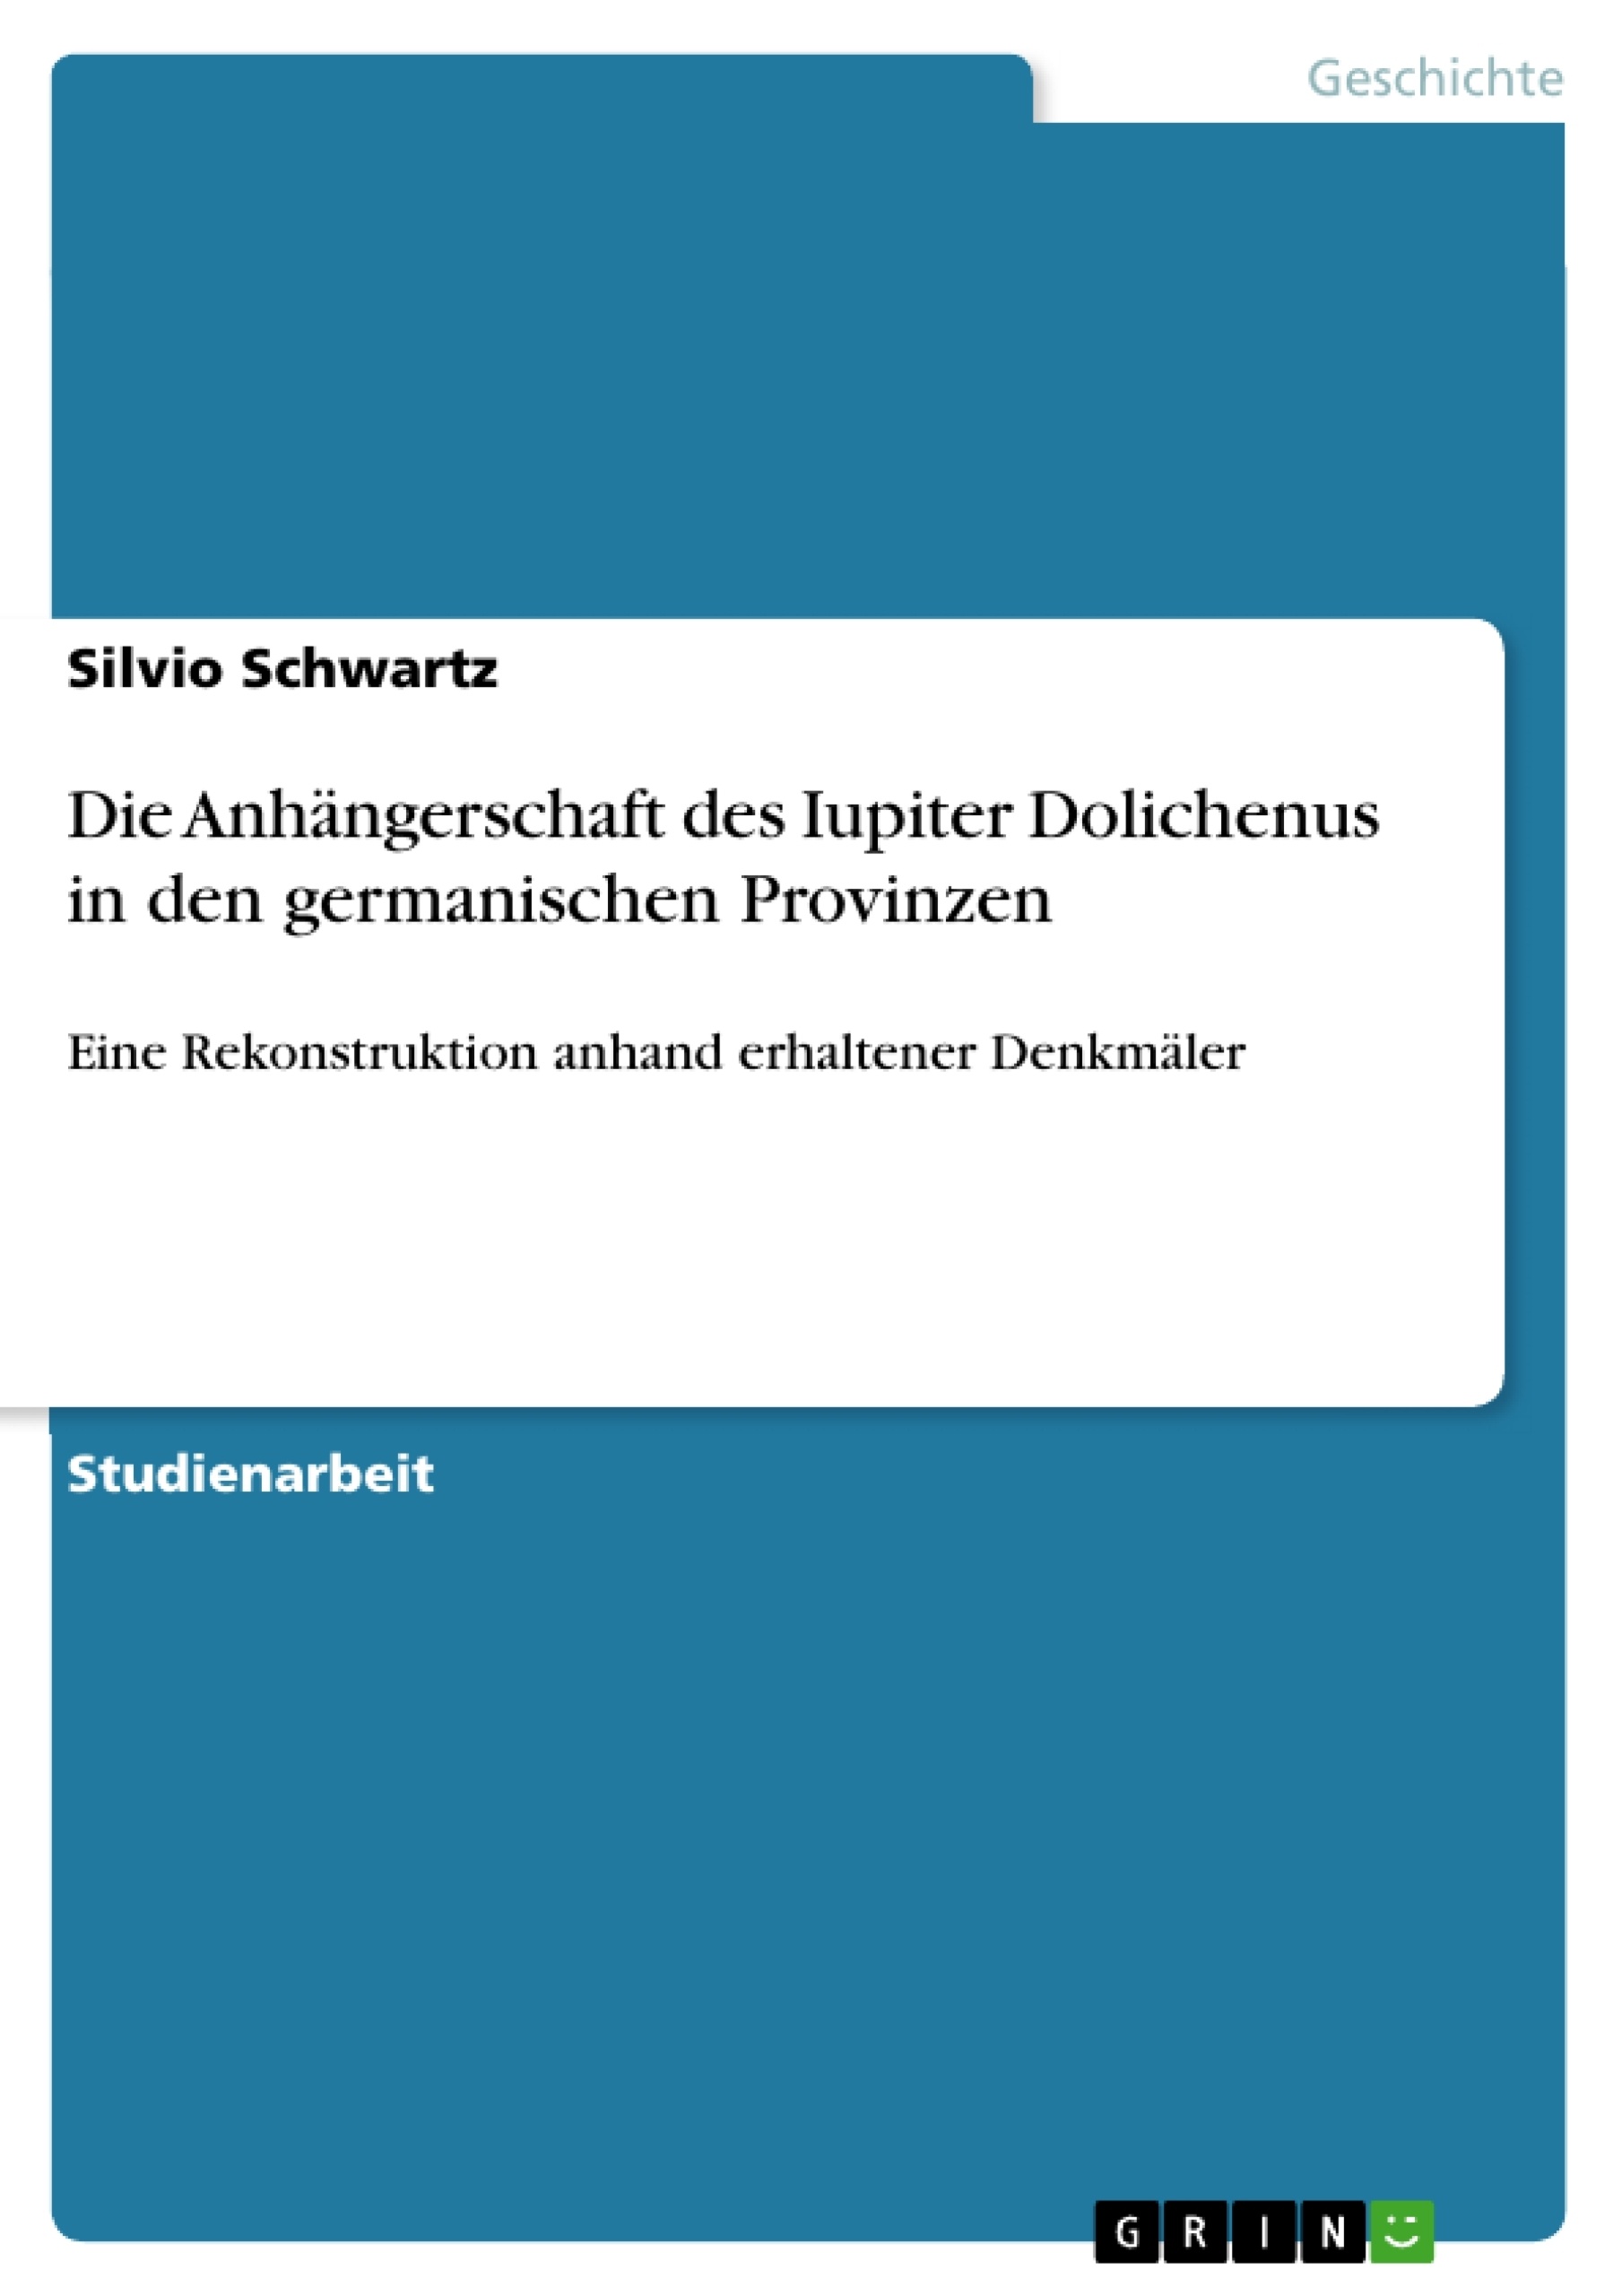 Titre: Die Anhängerschaft des Iupiter Dolichenus in den germanischen Provinzen